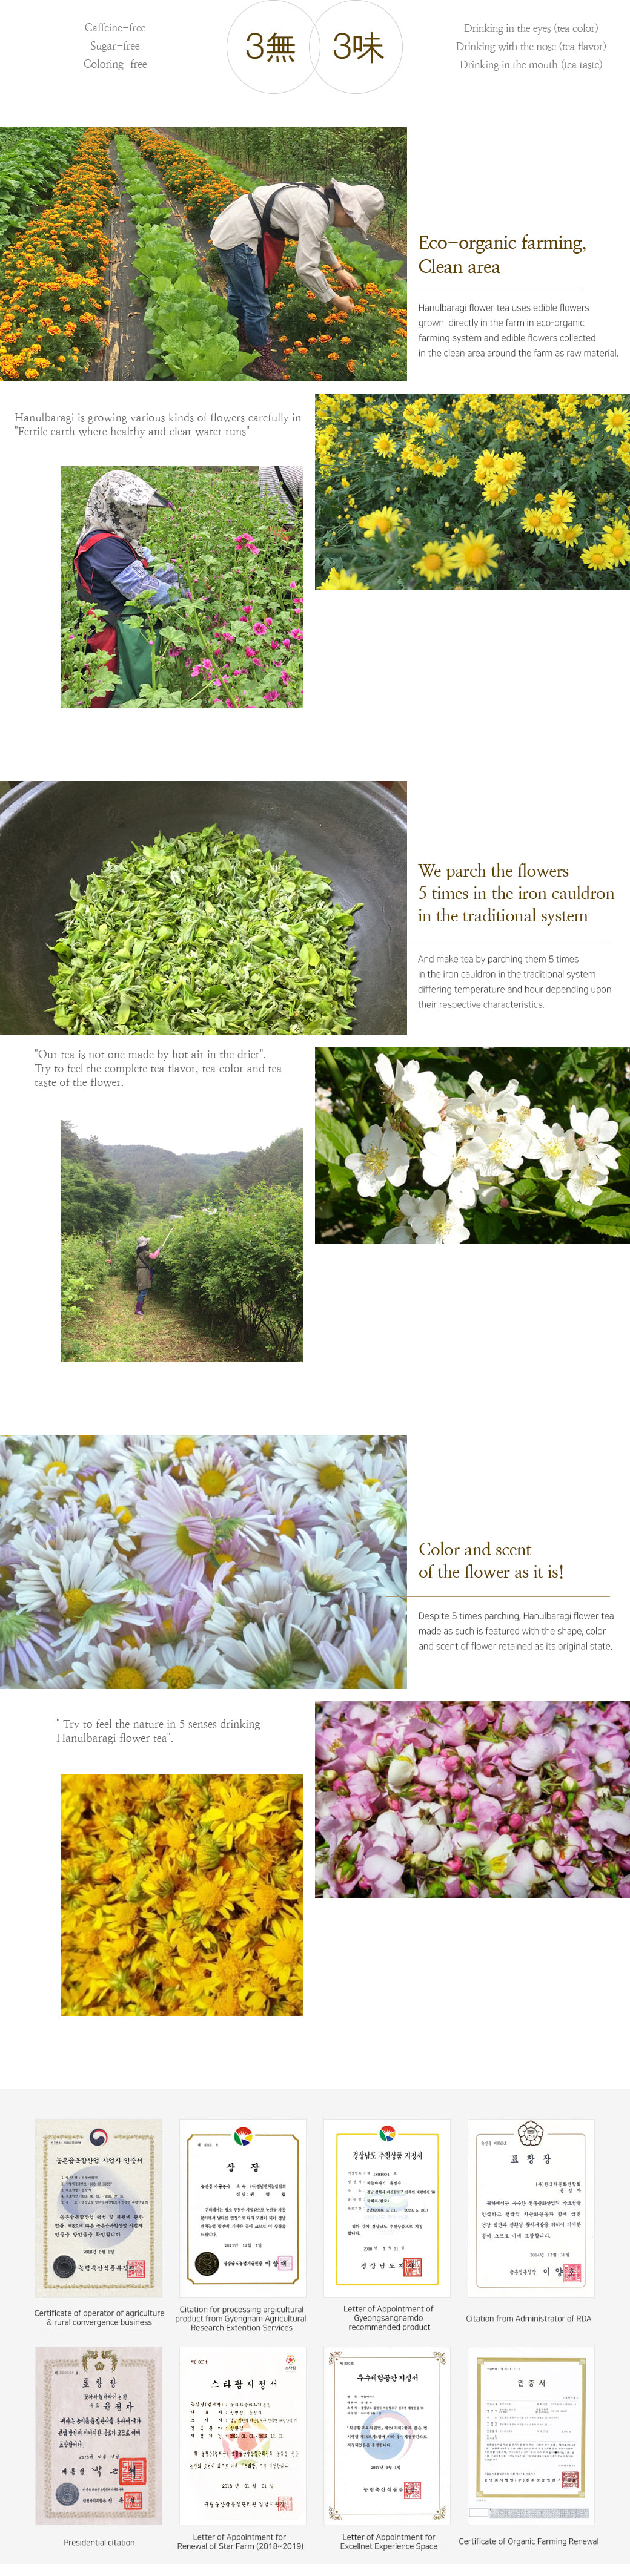 Hanulbaragi Flower Bed Story.